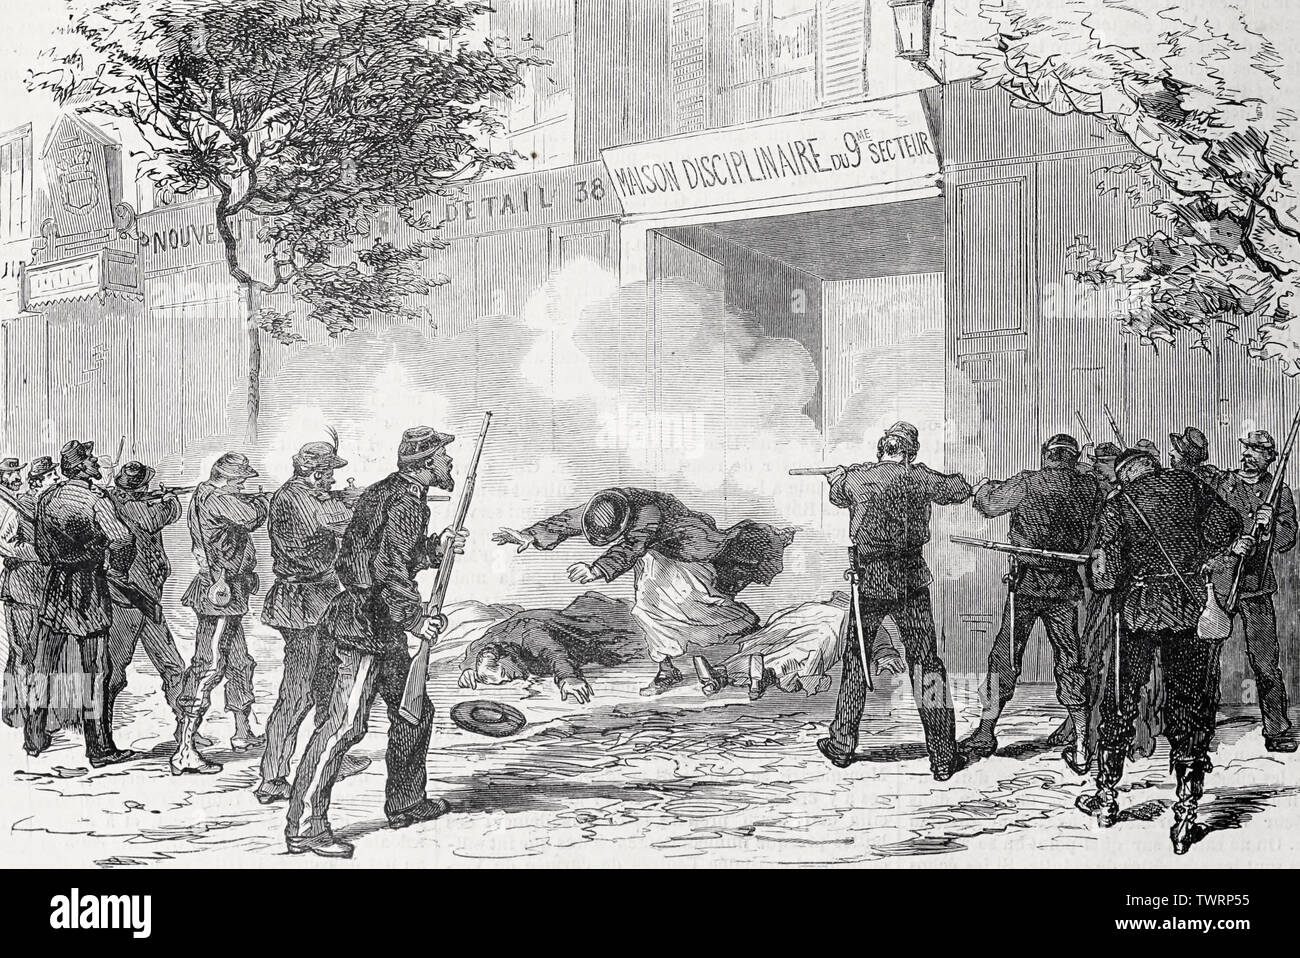 Massaker an die Dominikaner von Arcueil durch die französischen Truppen, 26. Mai 1871, während des Angriffs auf die Pariser Kommune Stockfoto